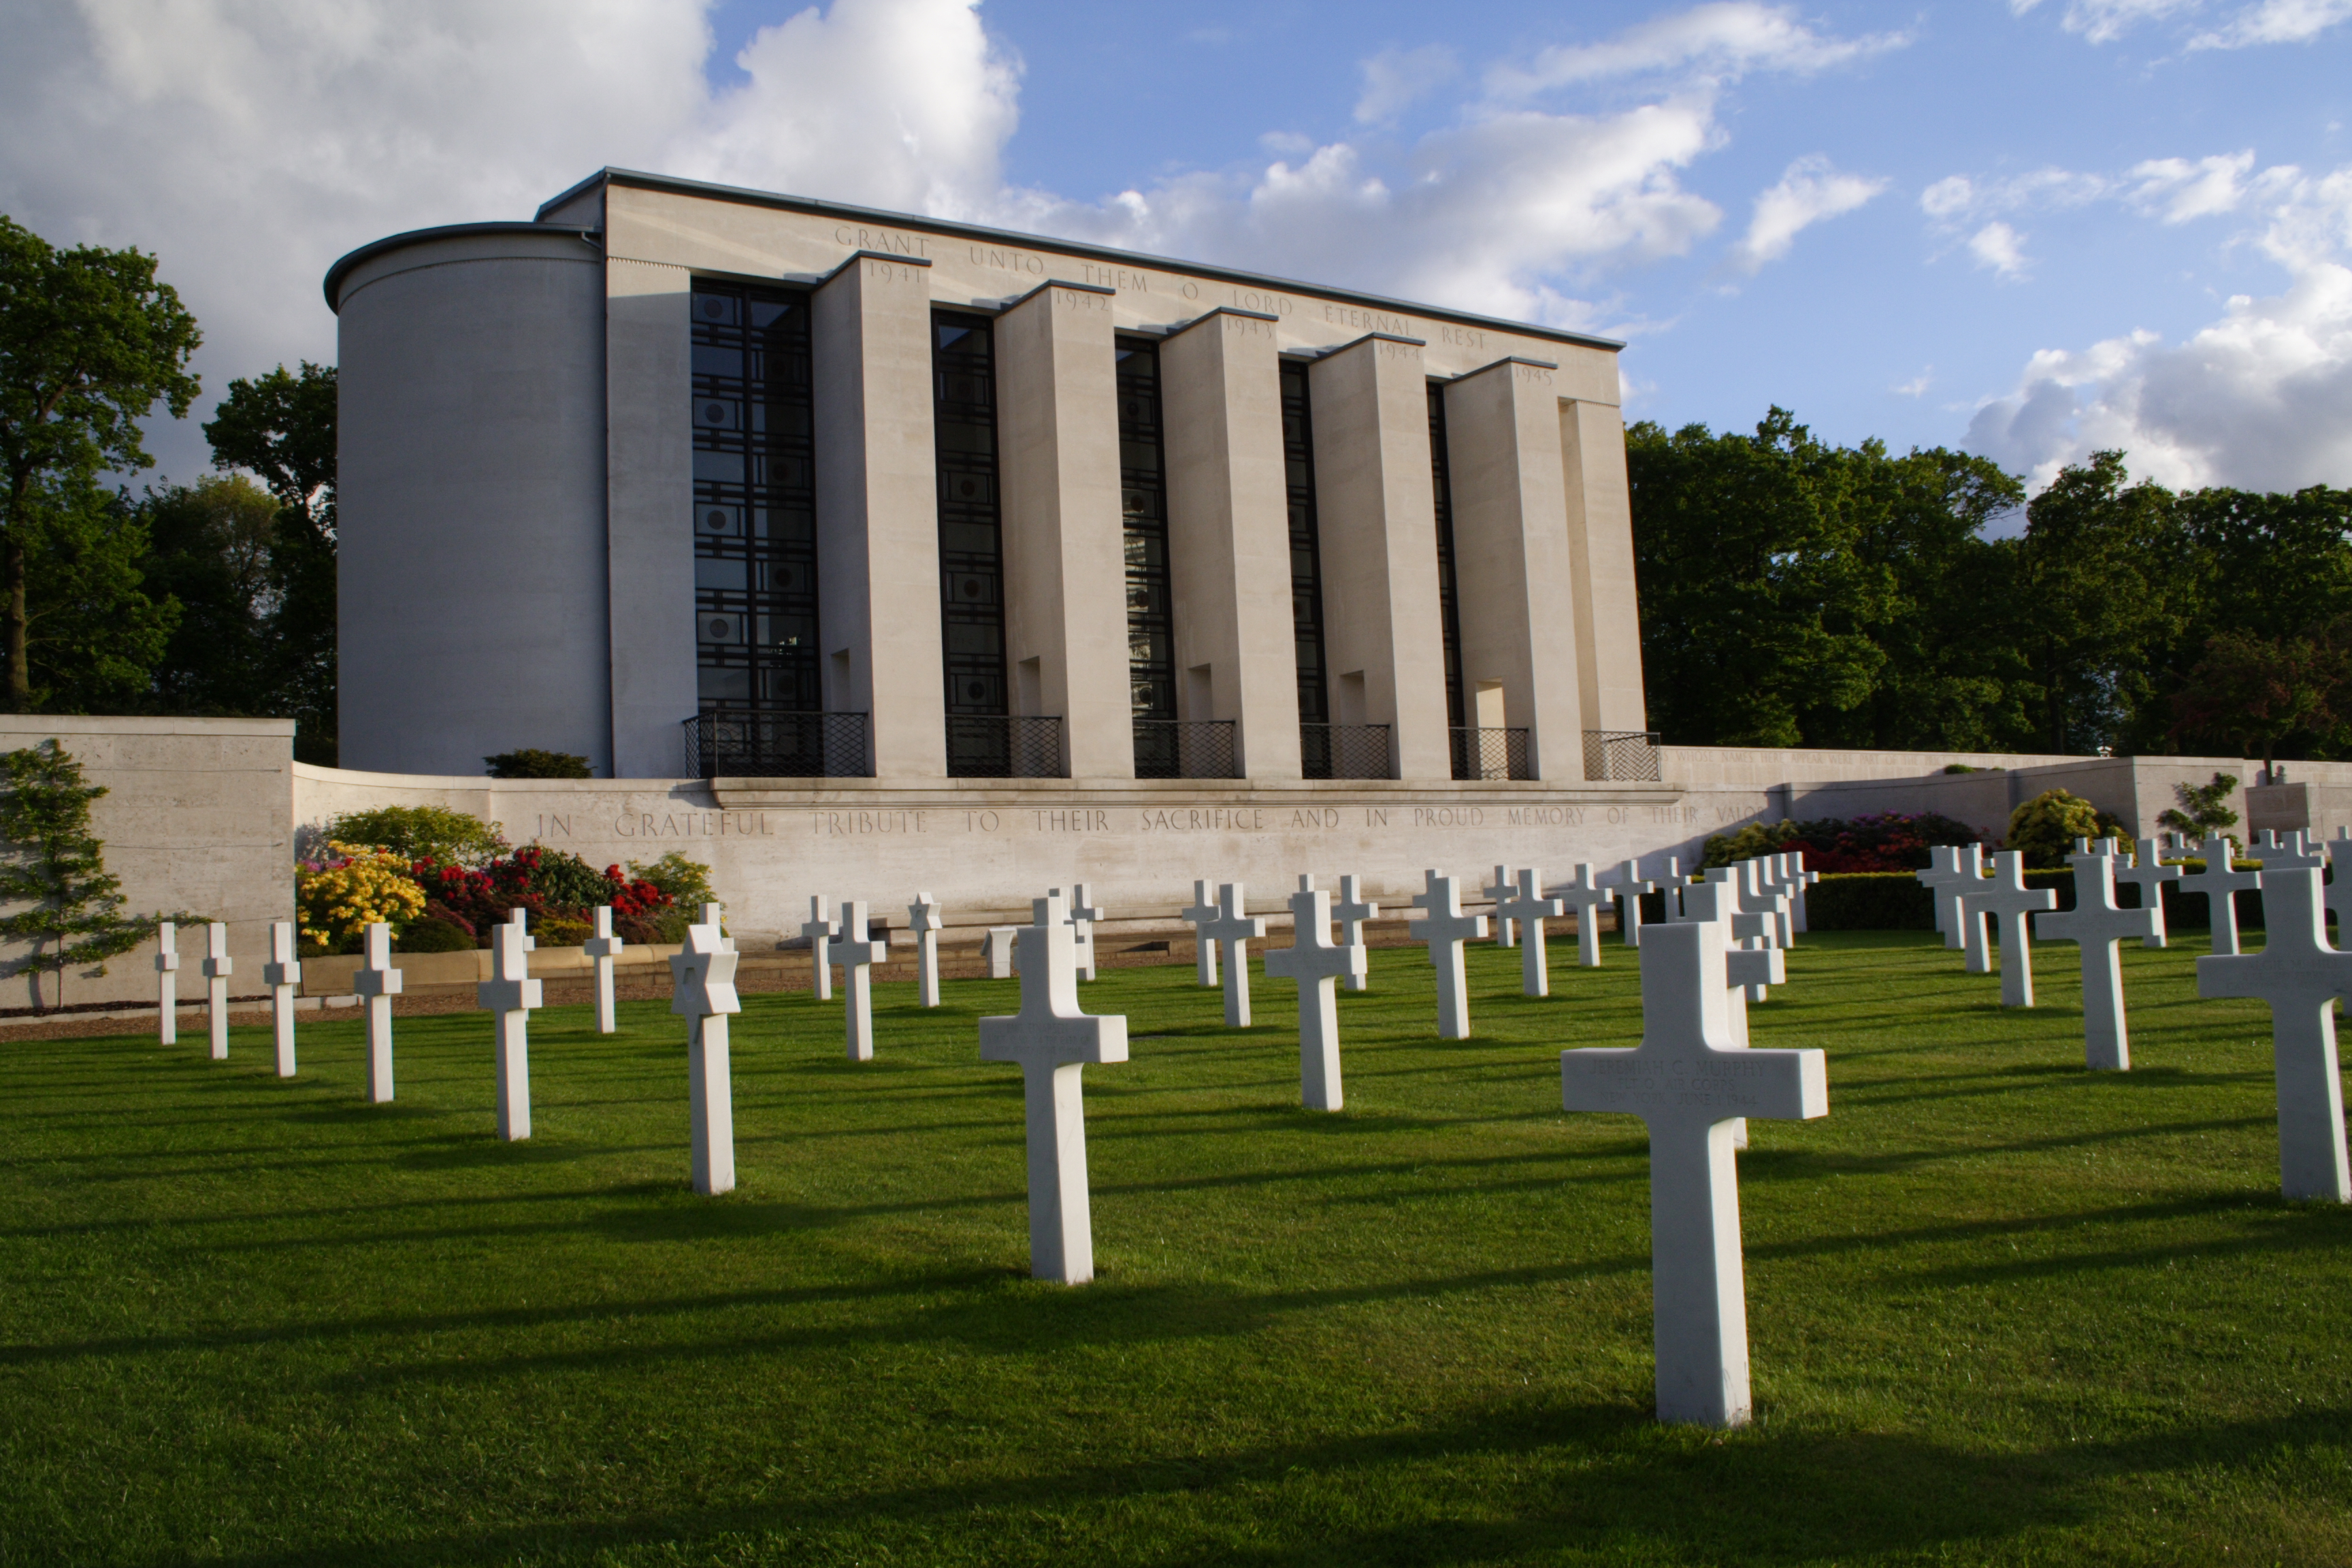 View of memorial at Cambridge, UK